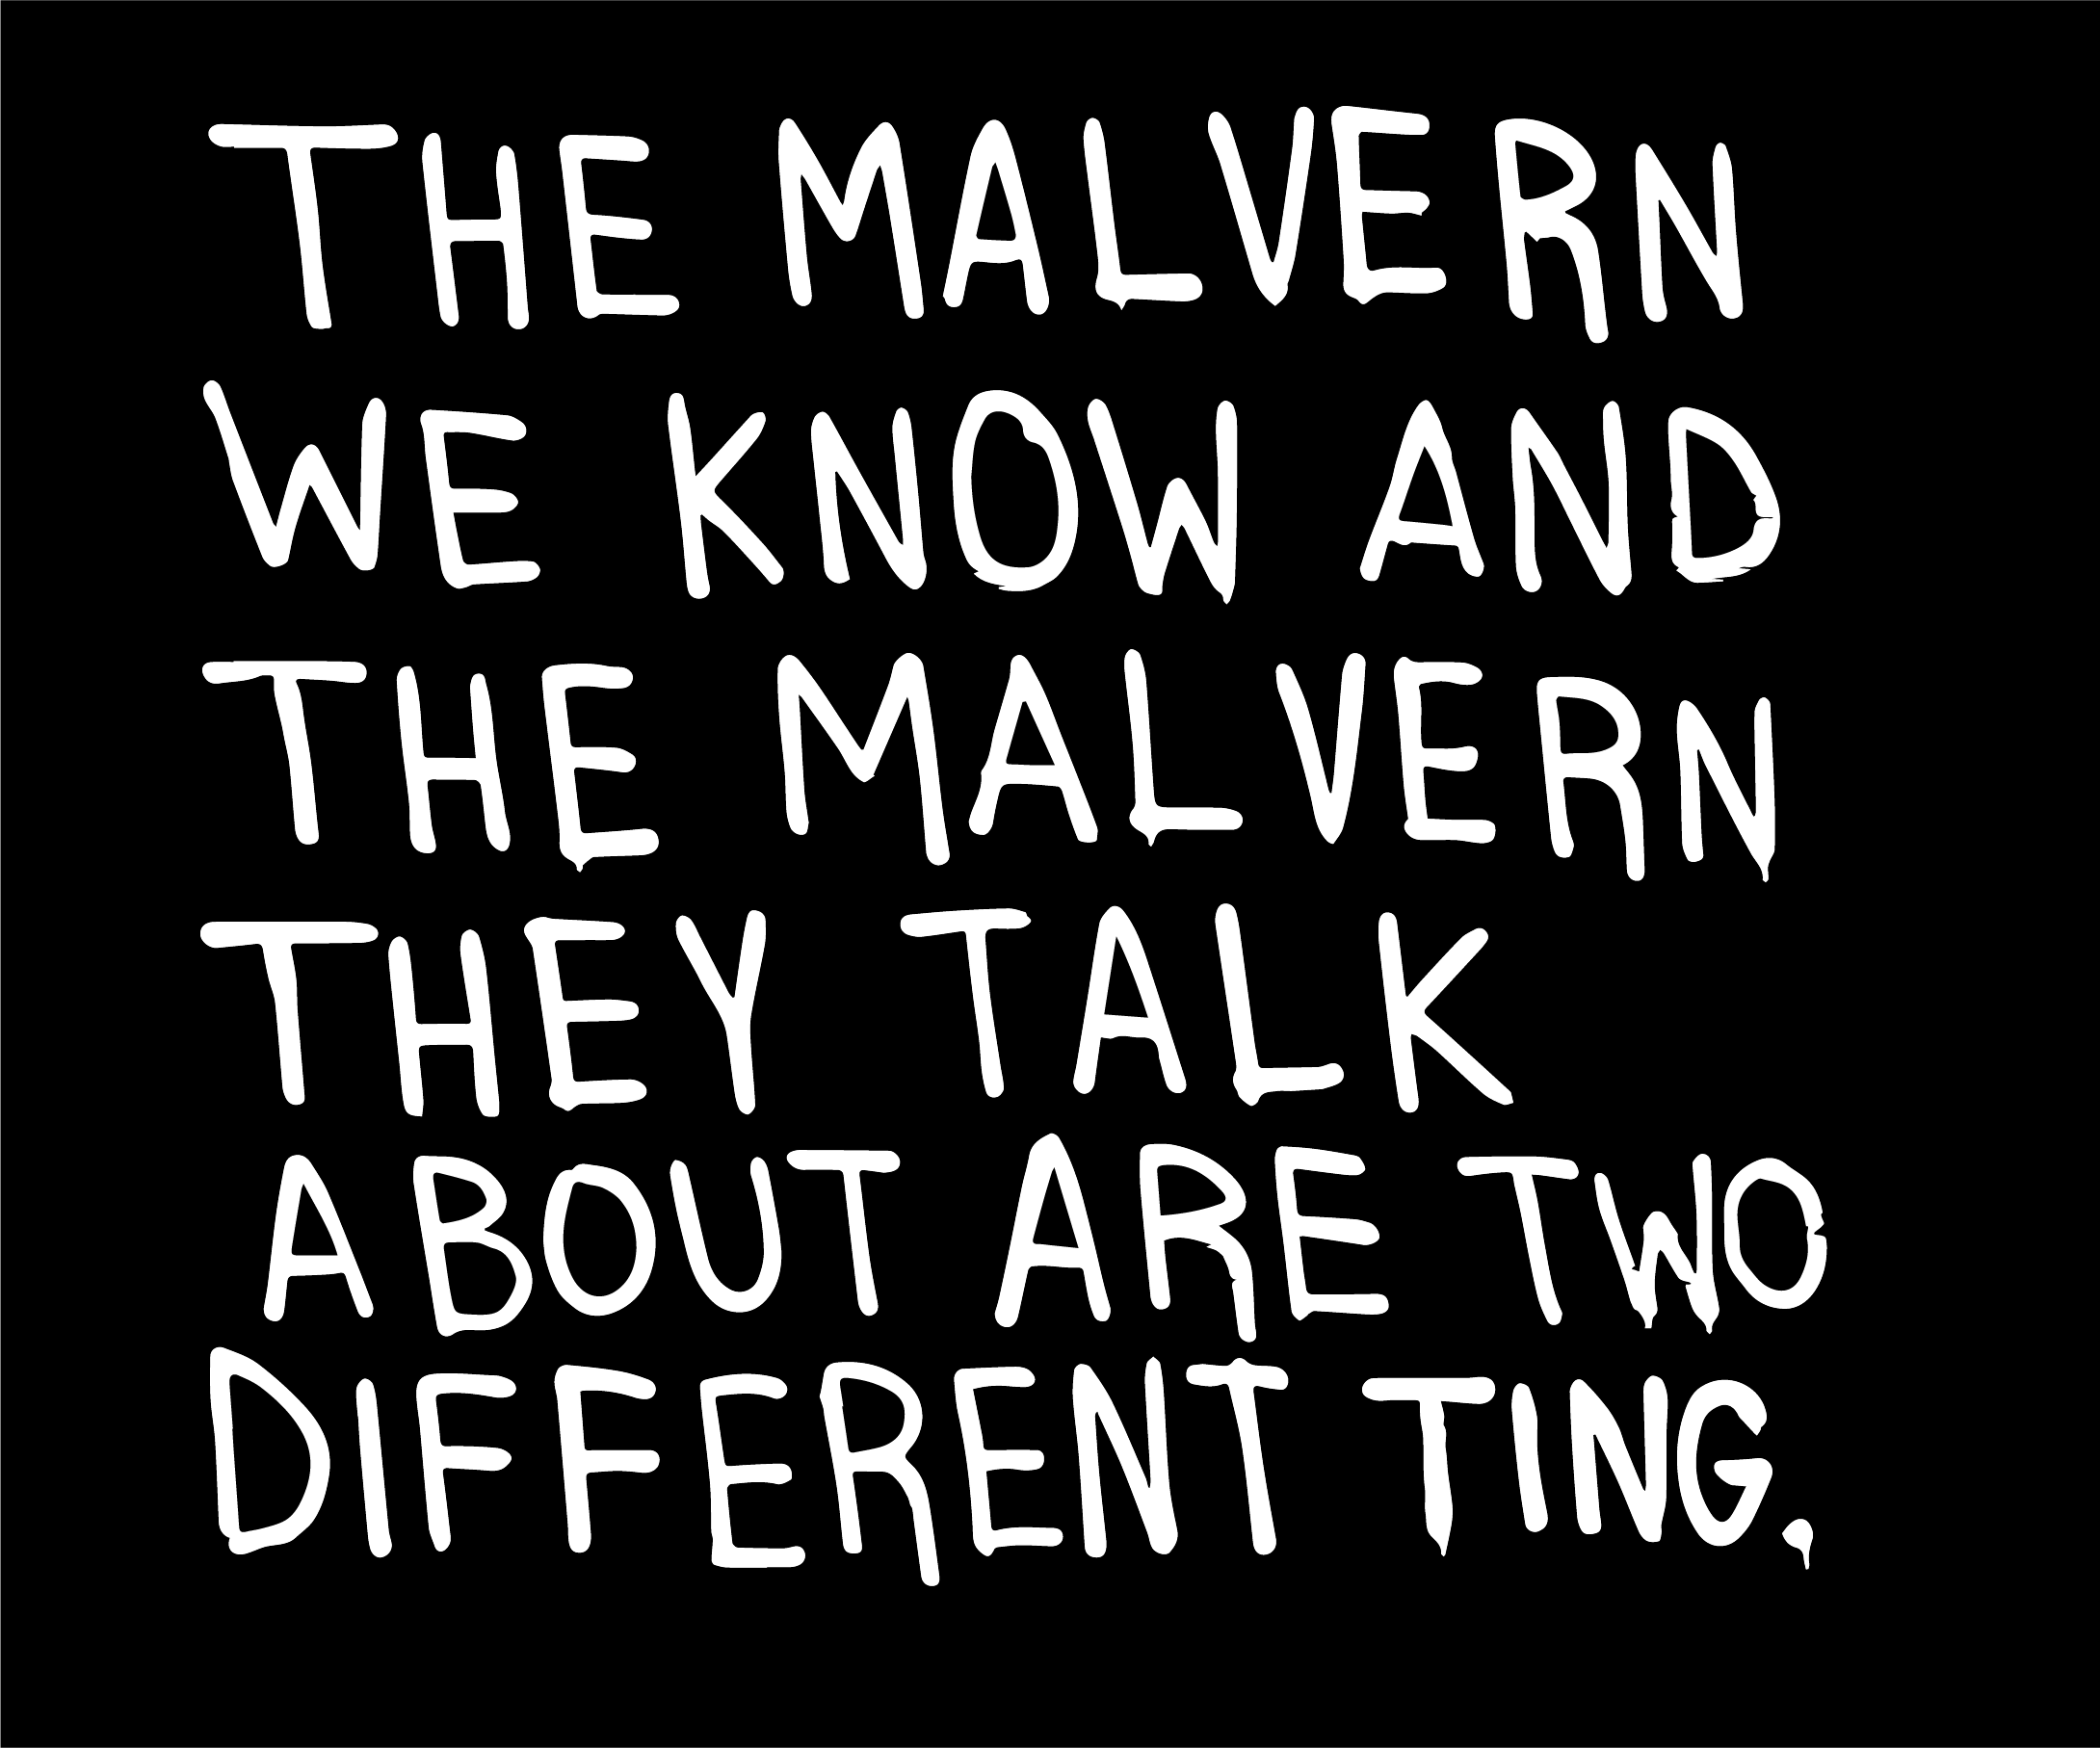 Malvern - we knowVector2